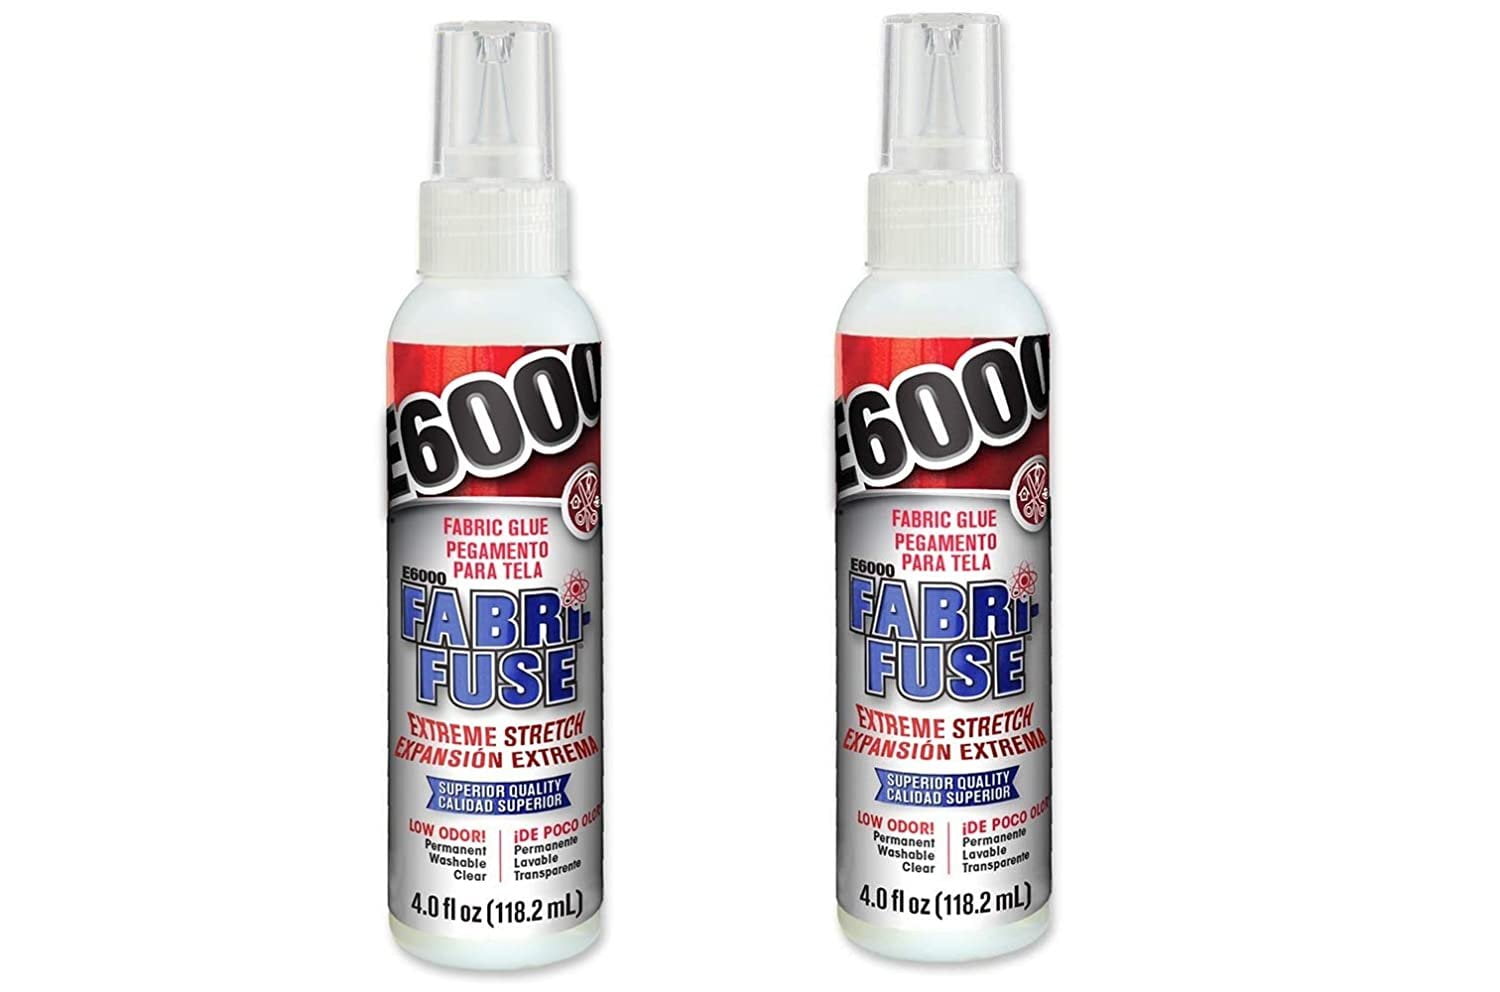 E6000® Fabri-Fuse Fabric Glue